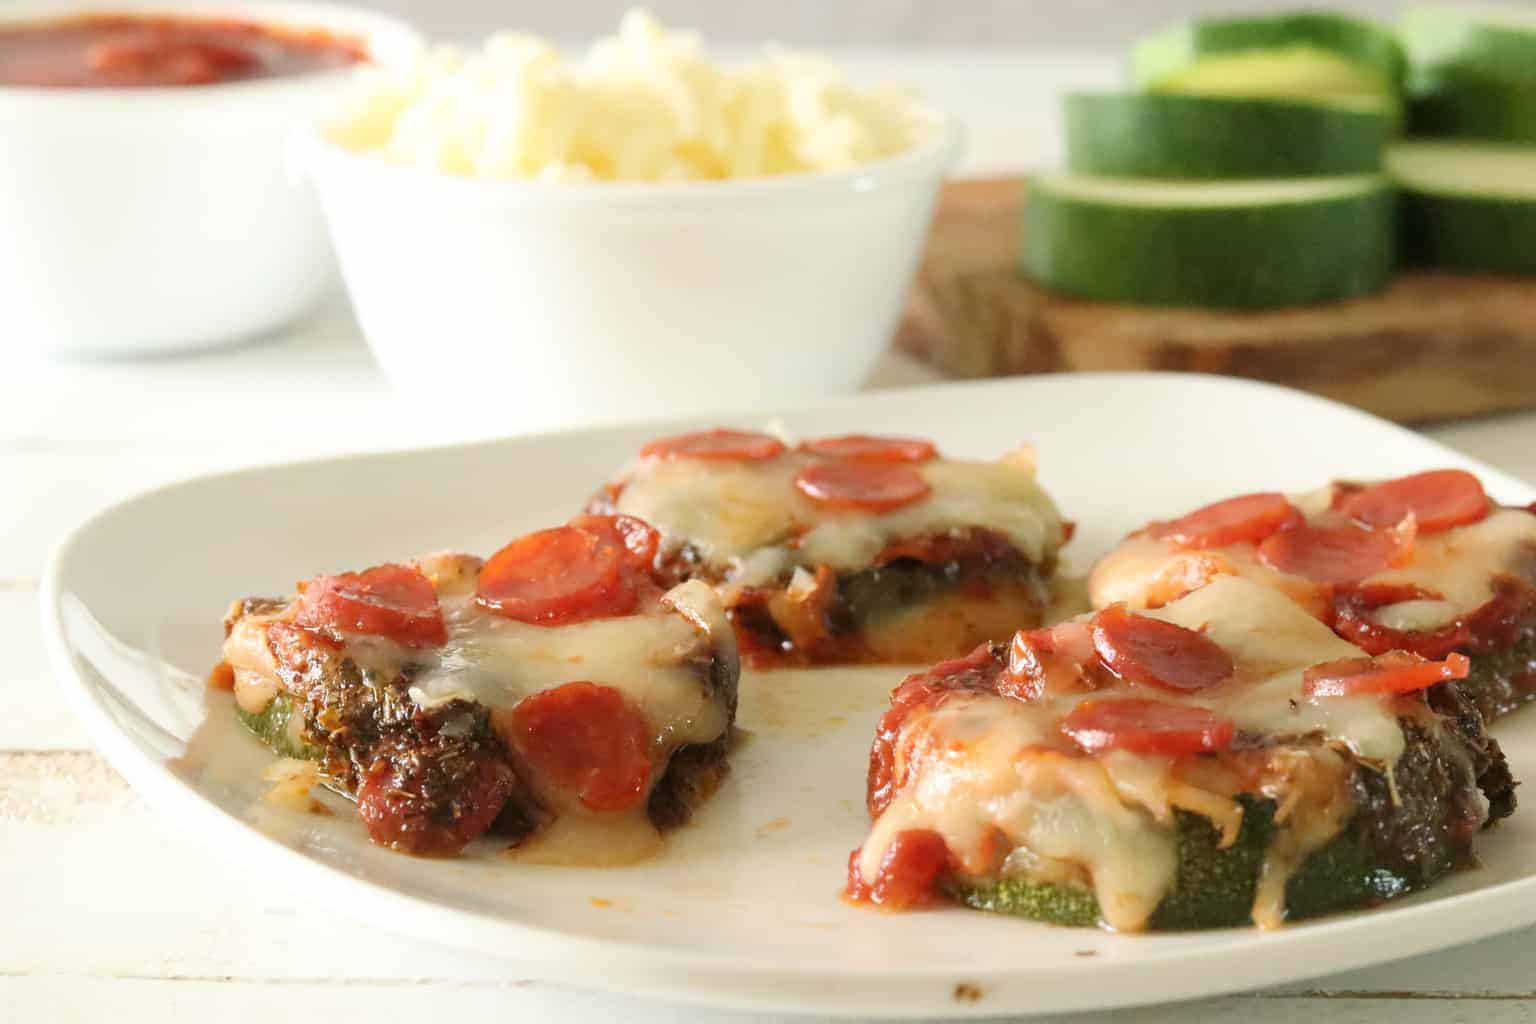 Mini zucchini pizzas with mini pepperoni.